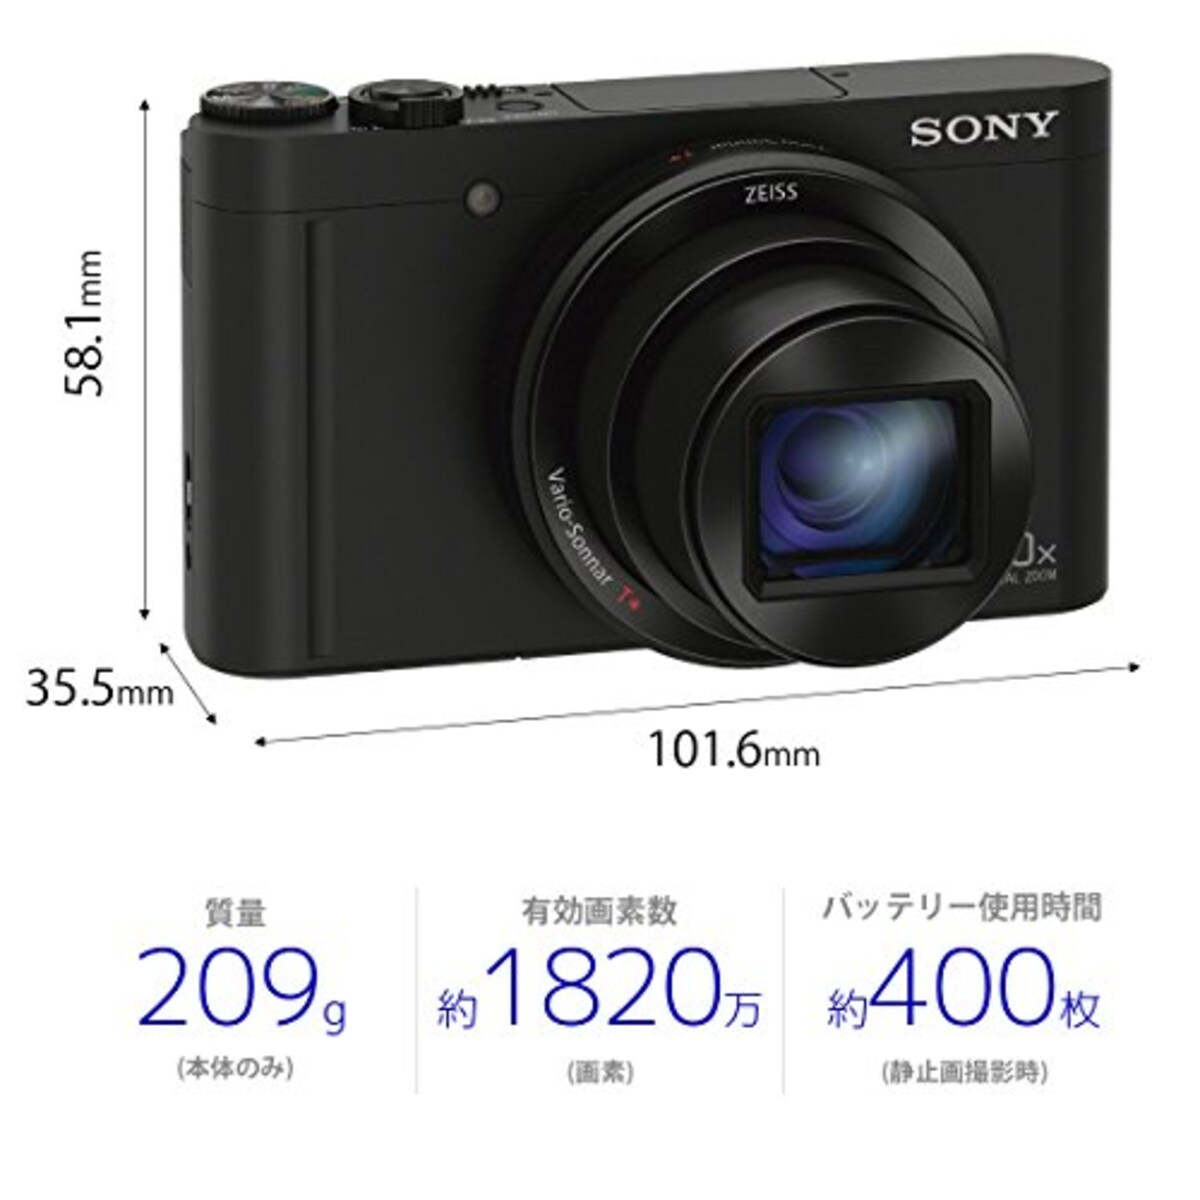  【WX500 と ジャケットケース セット】 大切なカメラをキズや汚れからガードしたい方に。DSC-WX500 ブラック + LCJ-HWA画像5 